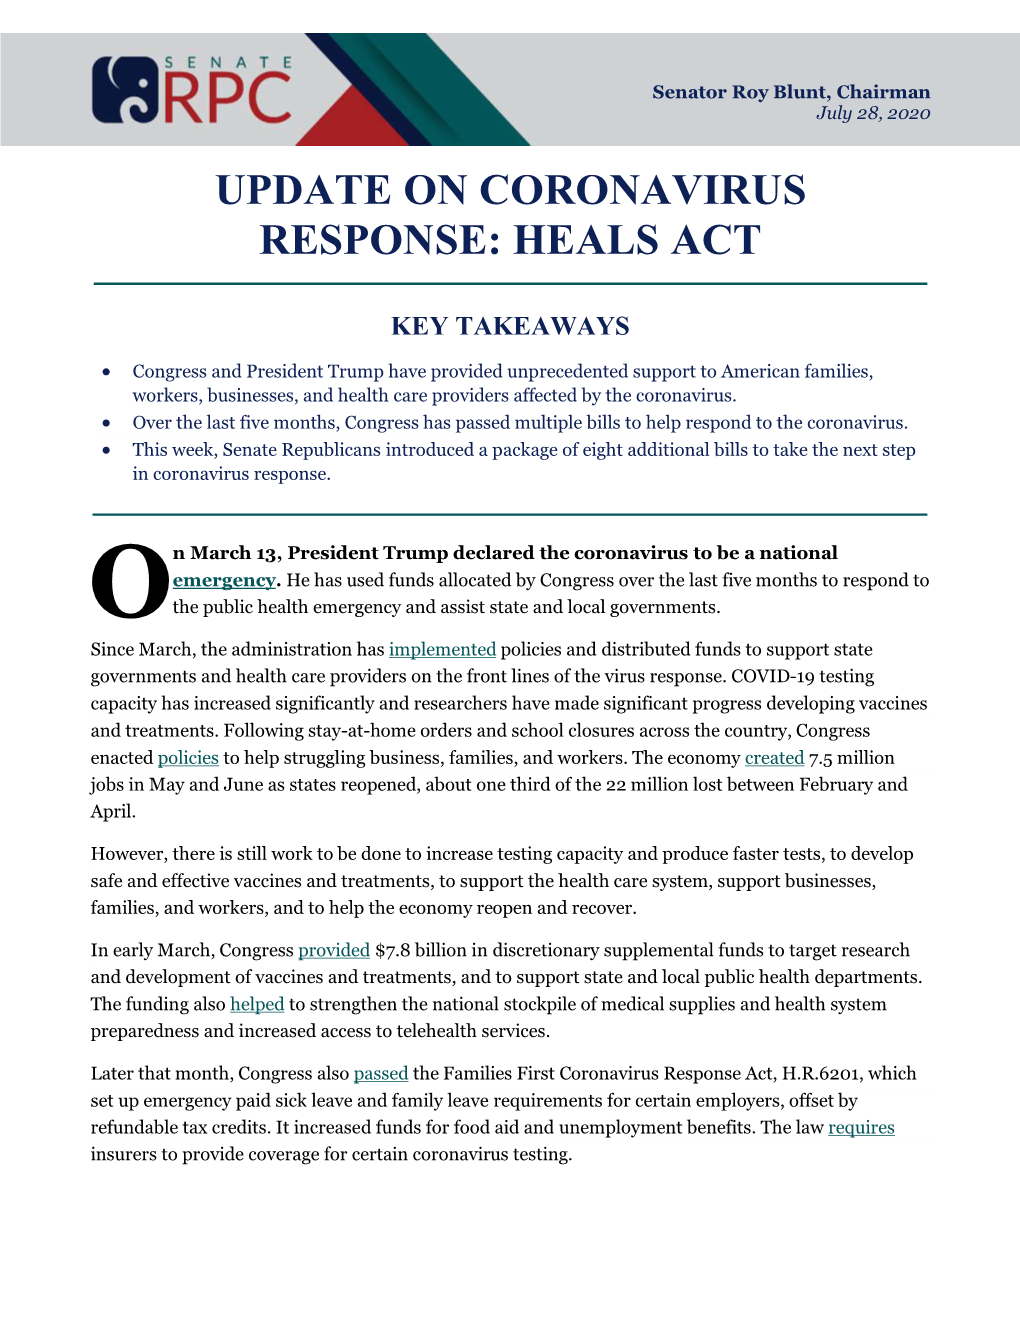 Update on Coronavirus Response: Heals Act